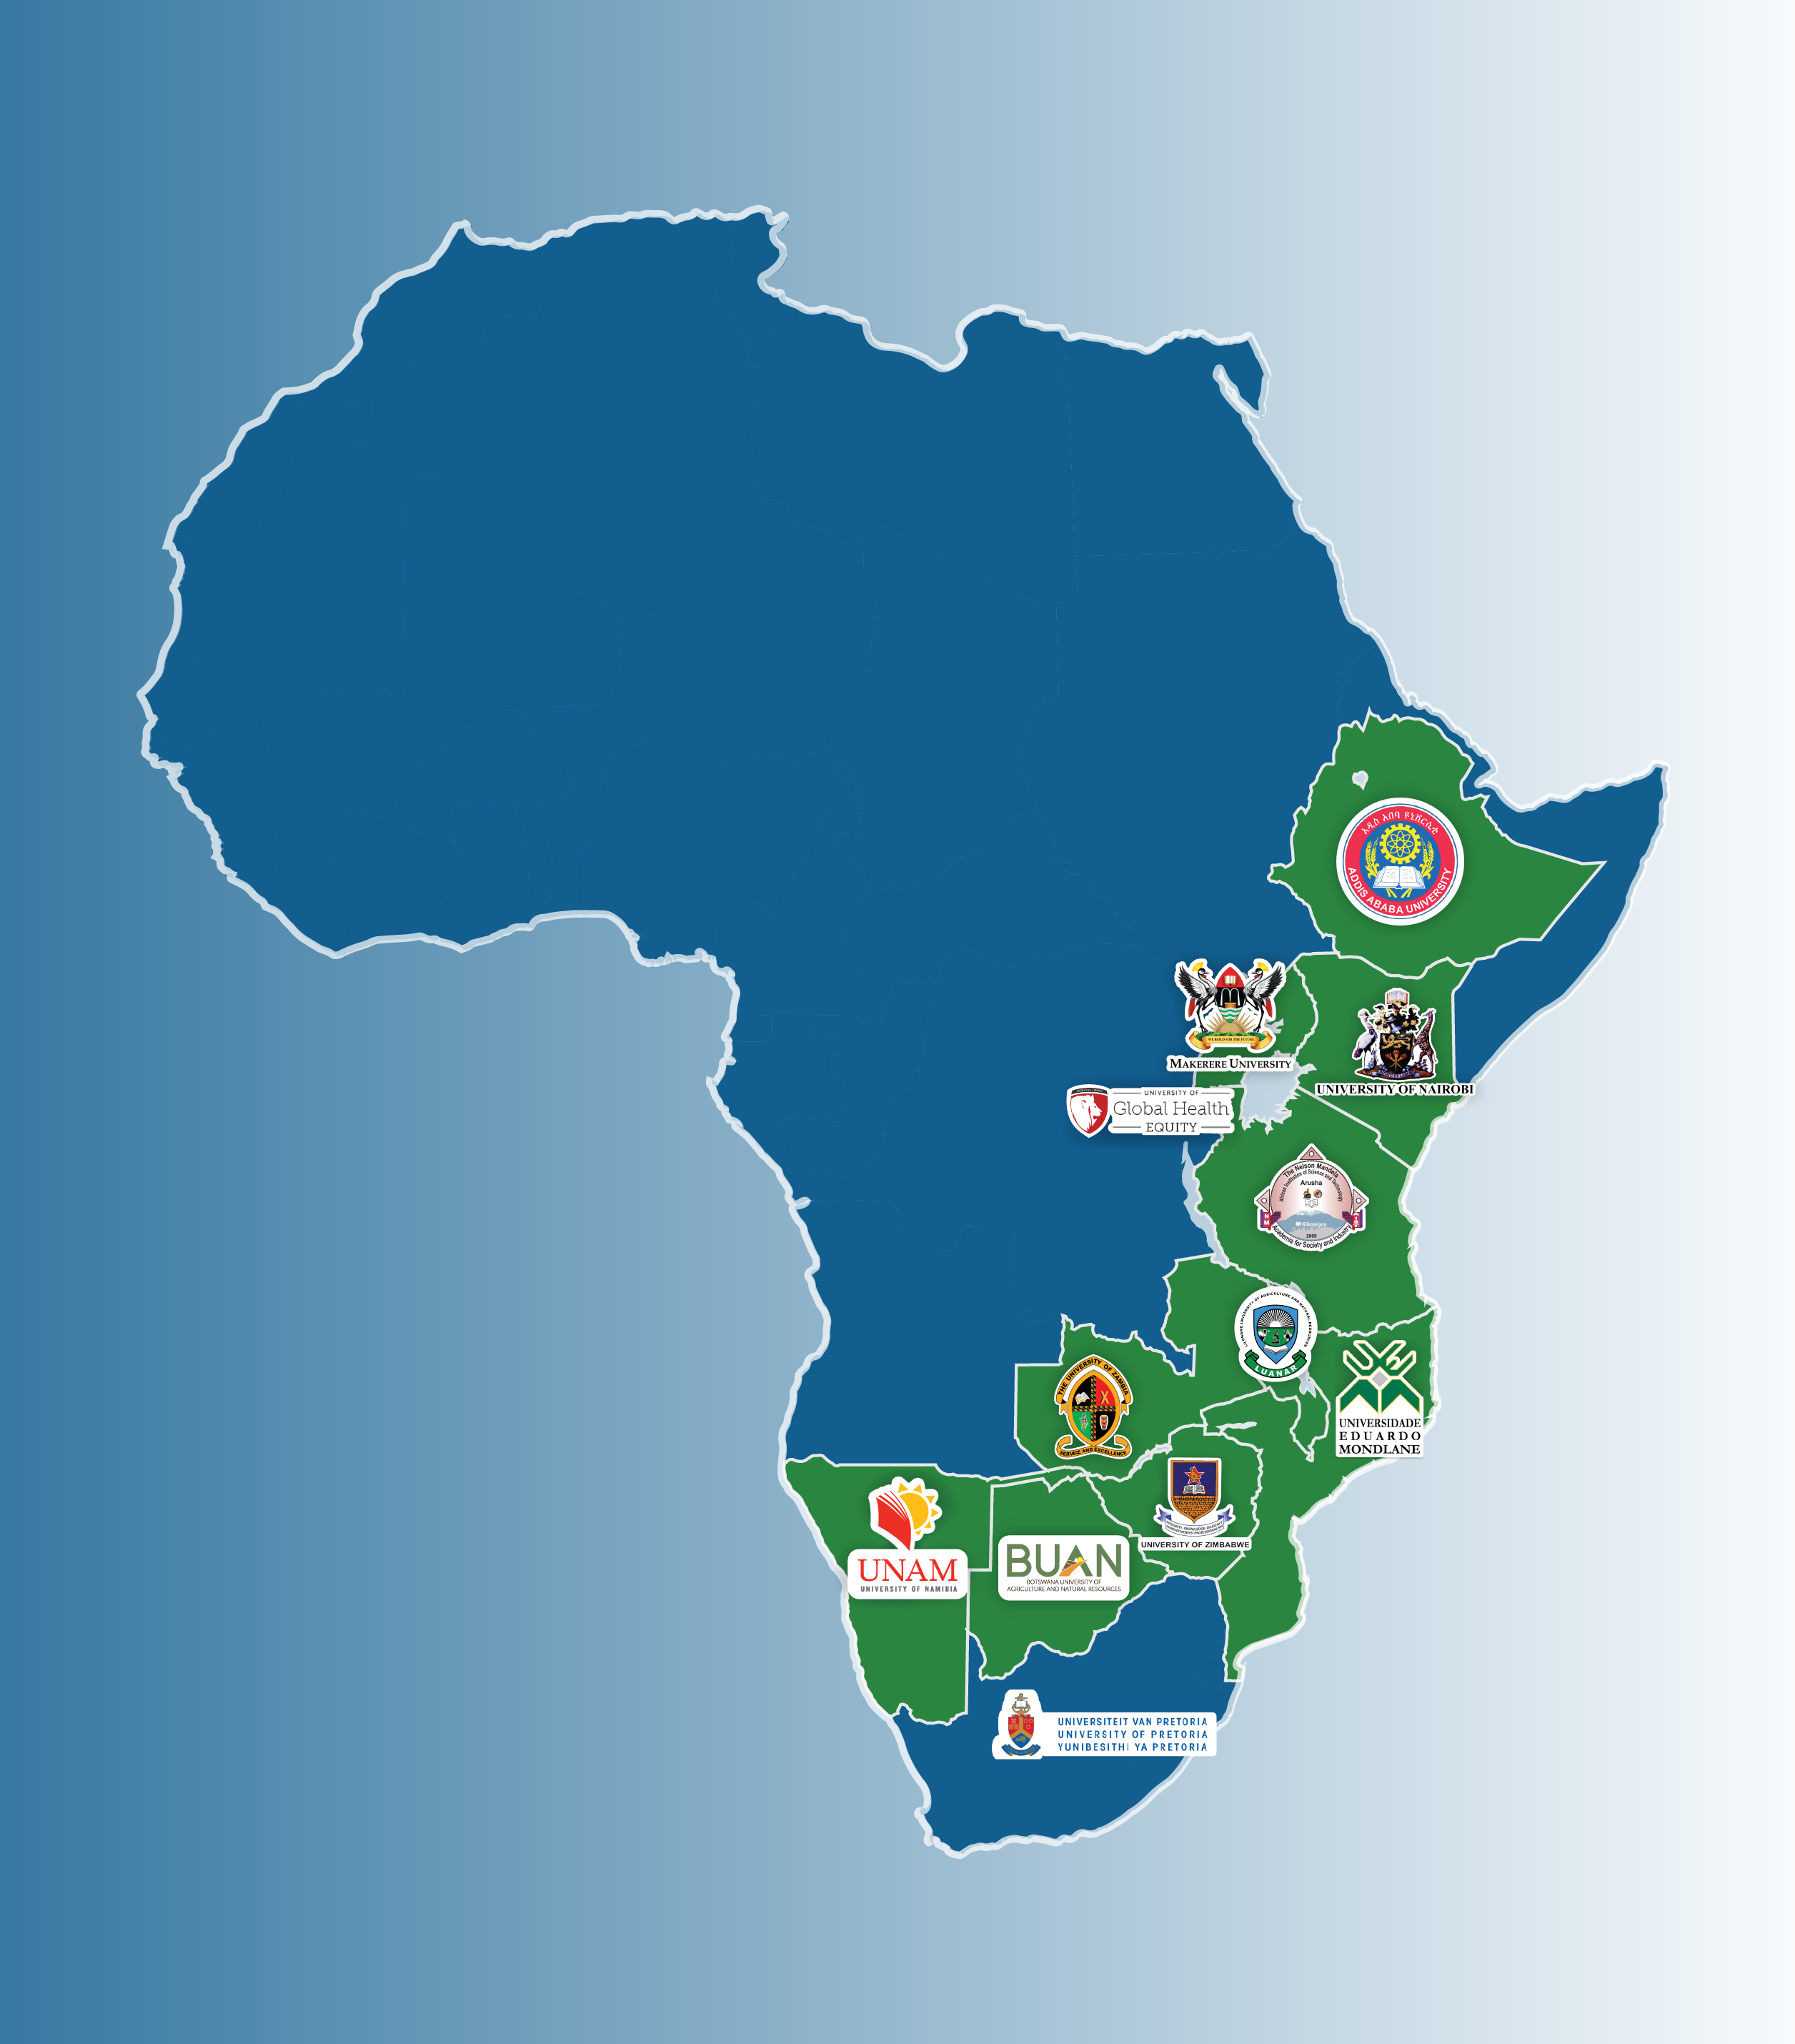 L’Observatoire One Health de COHESA : Un guichet unique sur les activités “Une seule santé” dans 12 pays d’Afrique